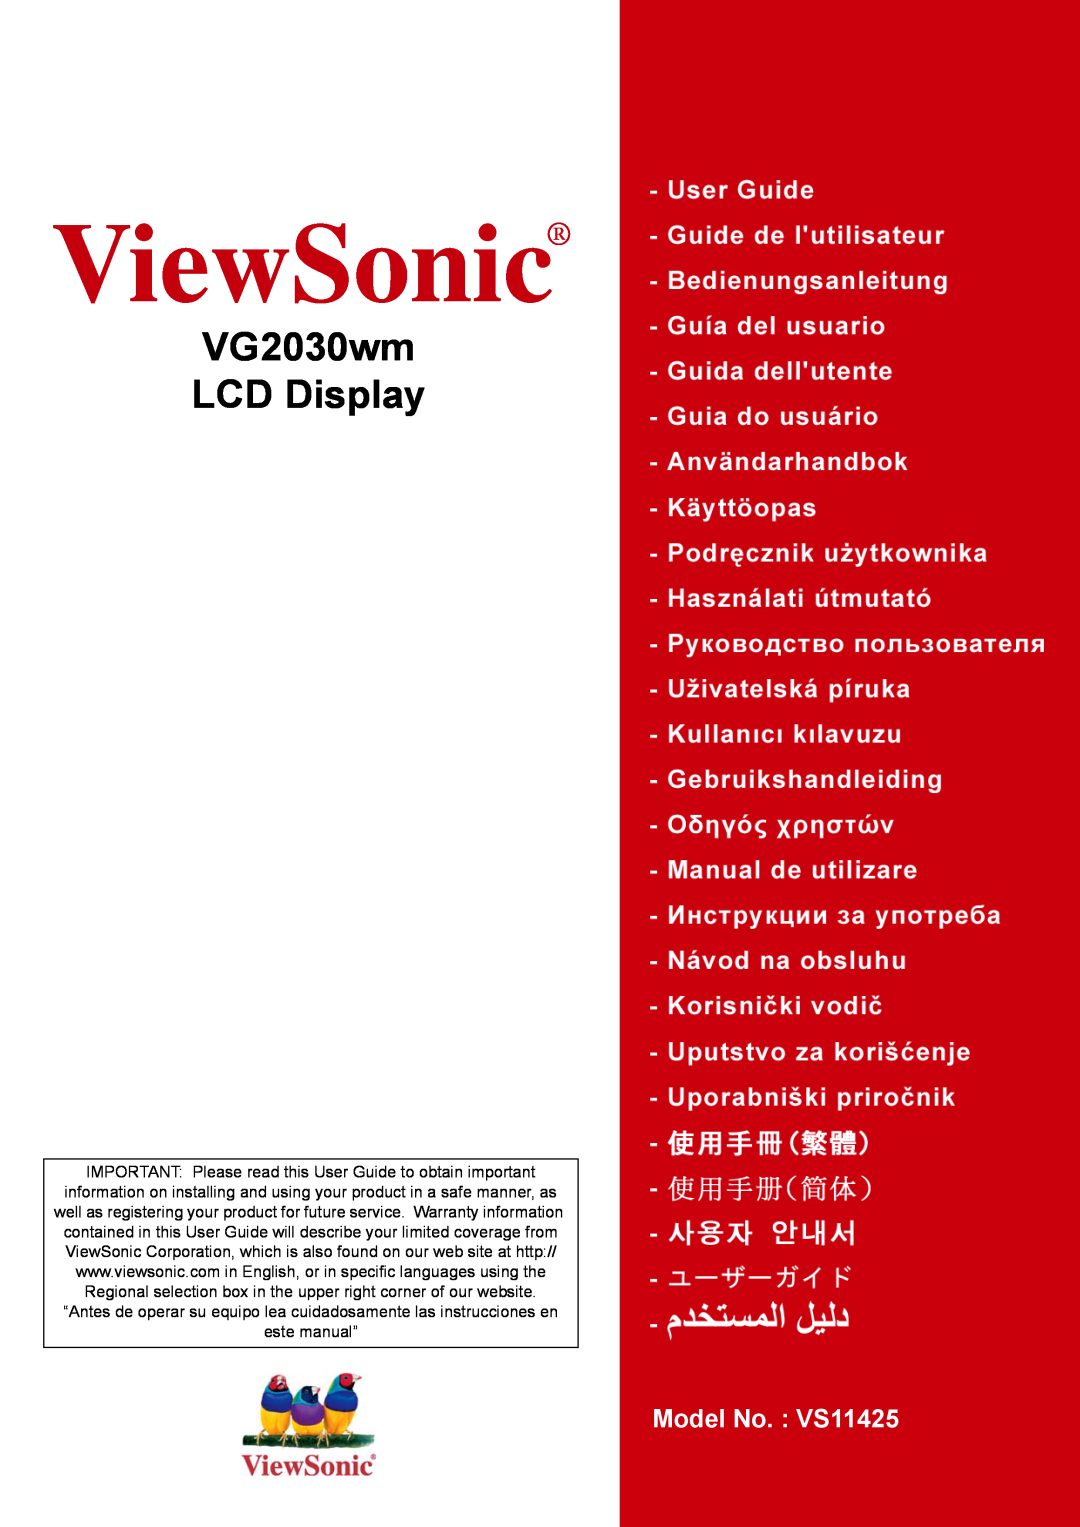 ViewSonic manual ViewSonic, VG2030wm LCD Display, Model No. VS11425 